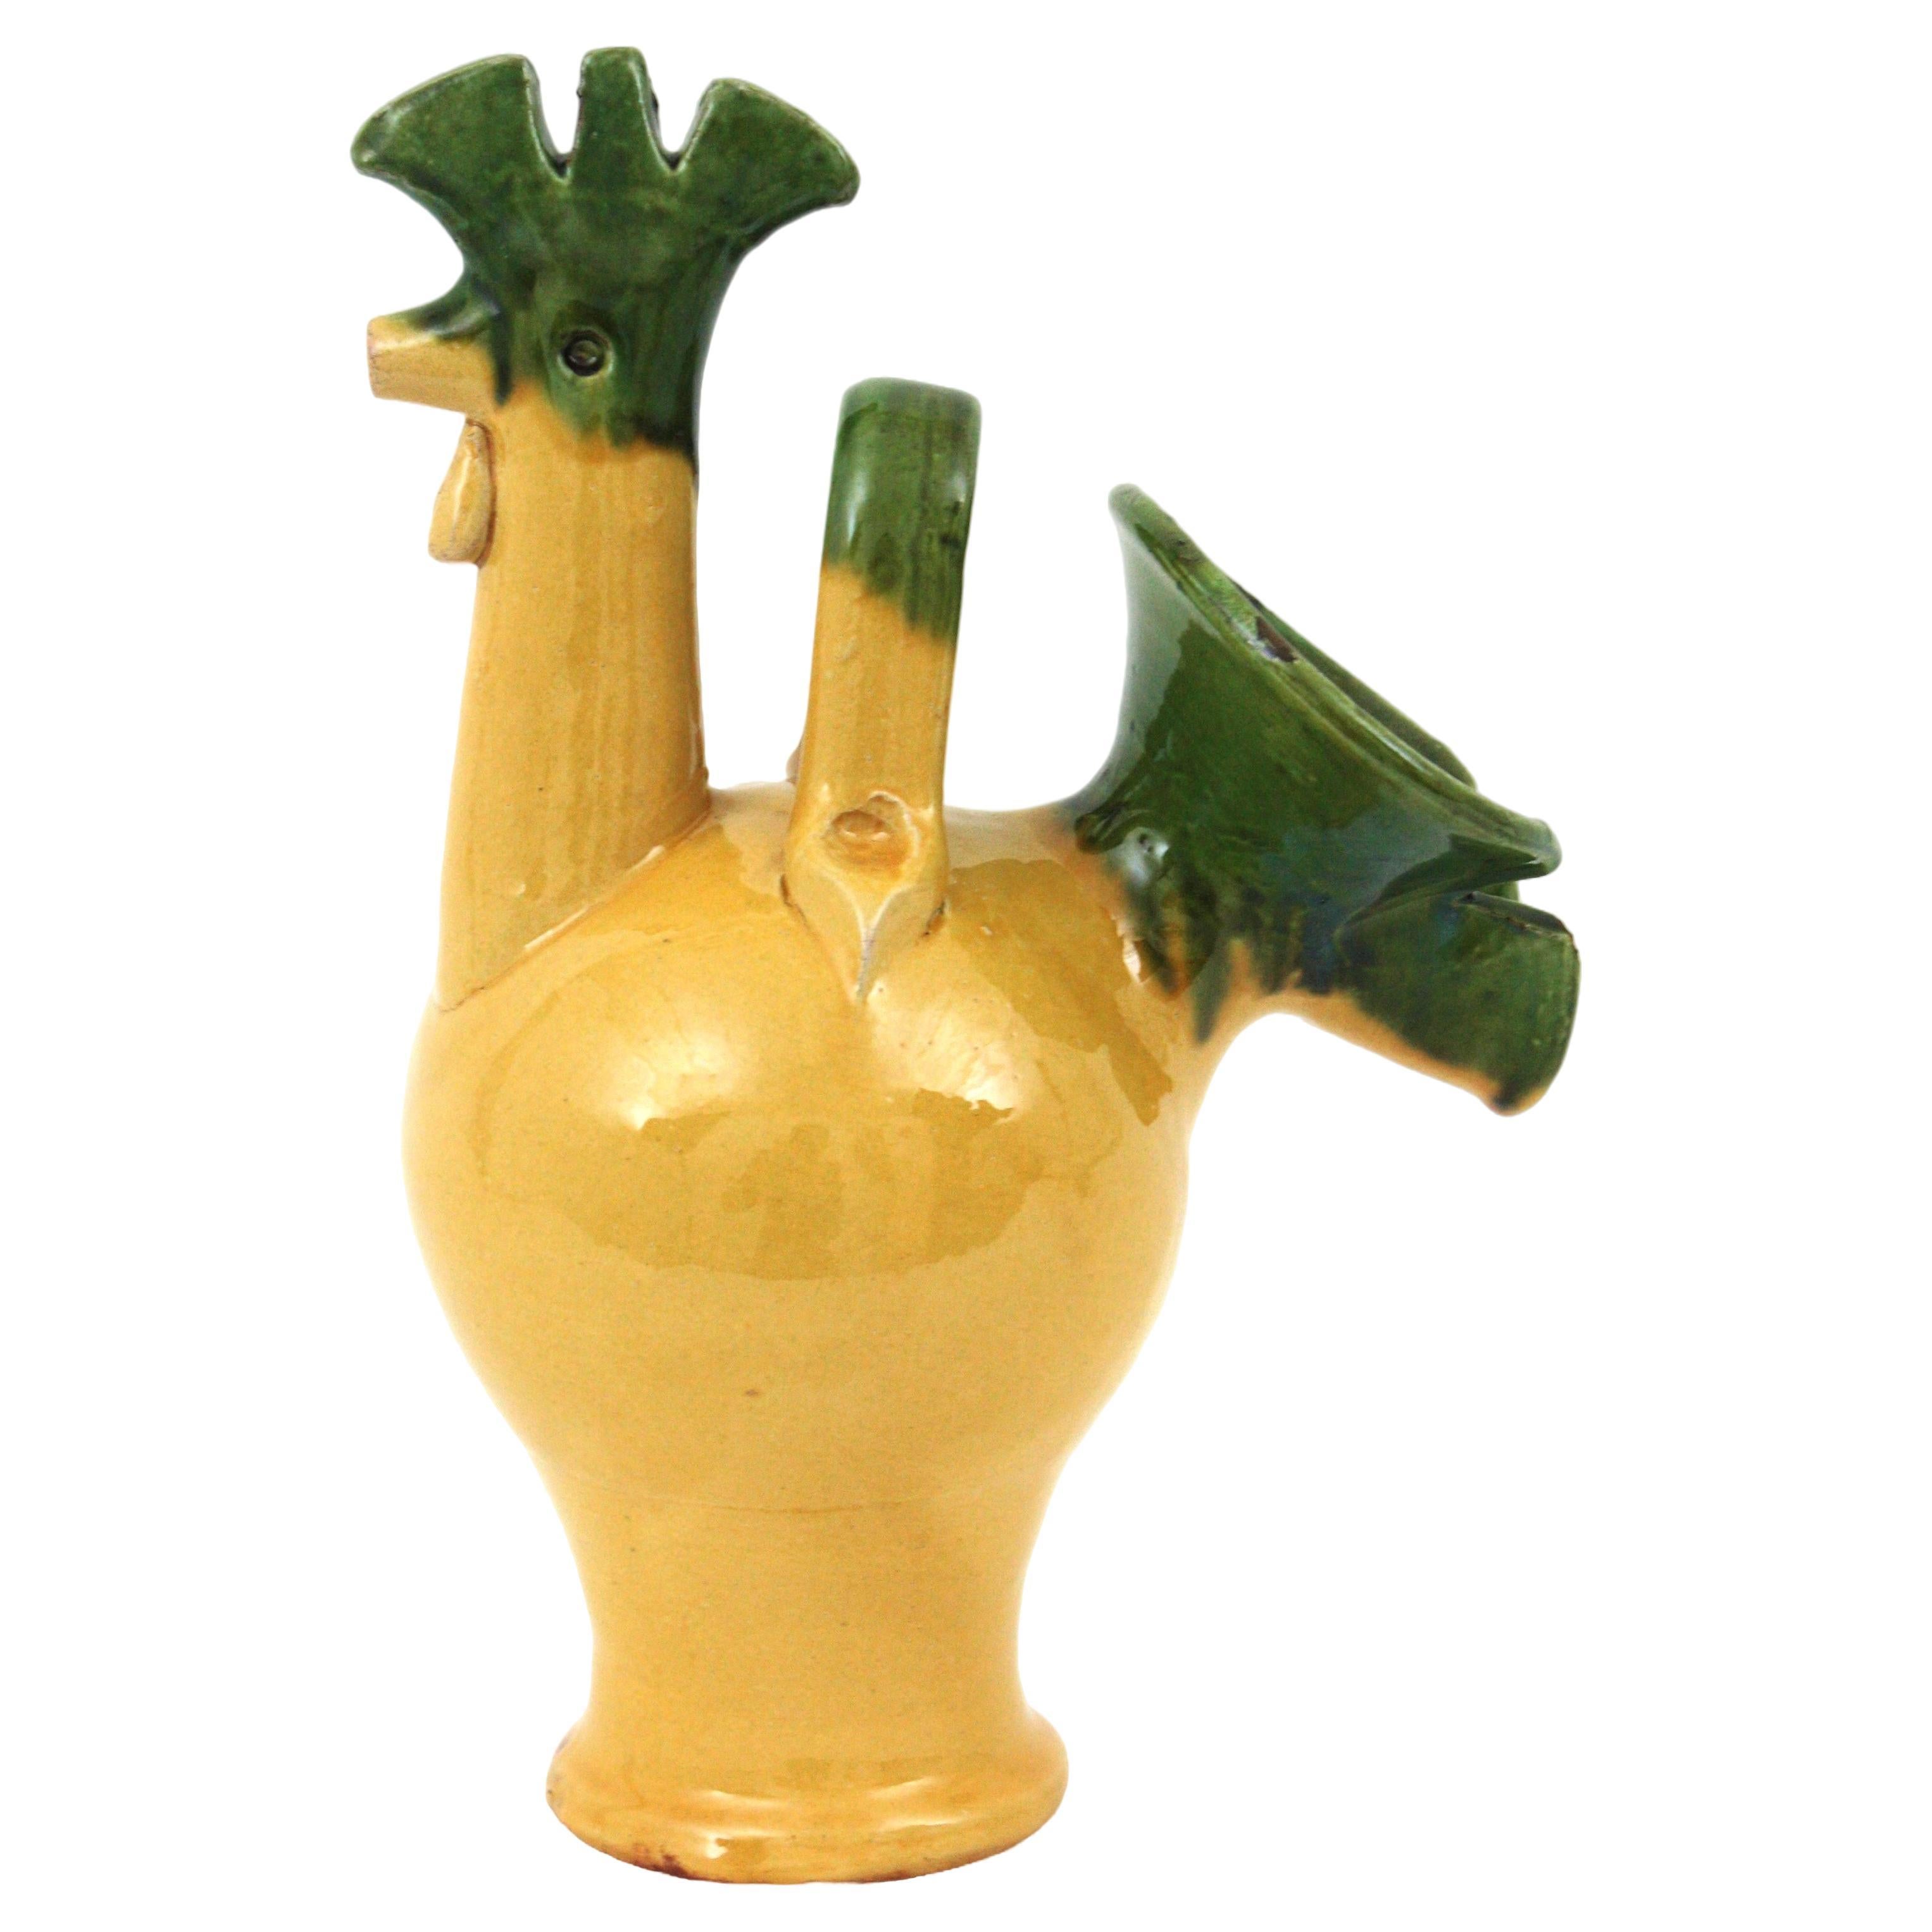 Cruche / pichet à coq en céramique Majolica verte et jaune, France, années 1950.
Fabriqué à la main en céramique émaillée jaune avec des accents verts.
Un accent cool pour toute cuisine ou pour être utilisé comme pichet de service. Collectional fait